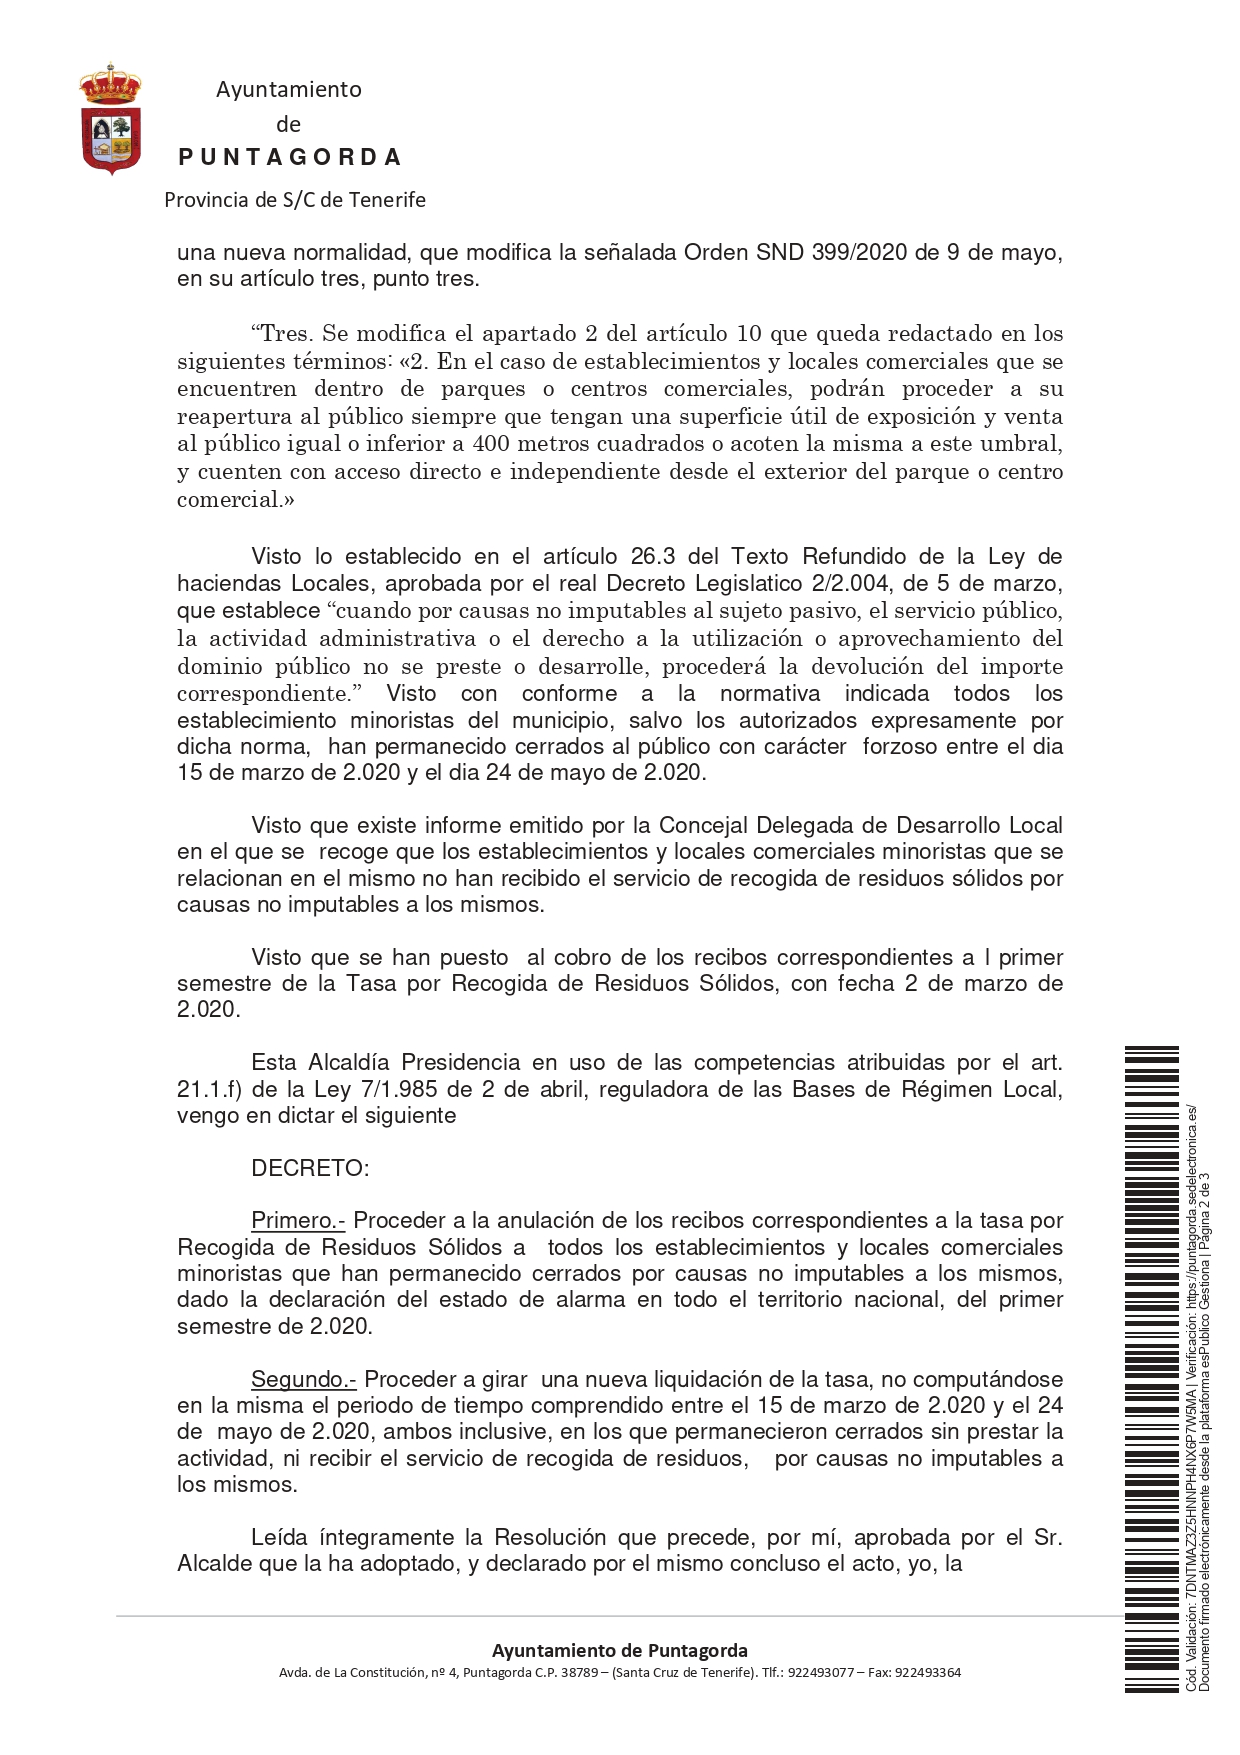 20200604_Resolución_Decreto de Alcaldía _ Decreto de Presidencia _DECRETO_page-0002